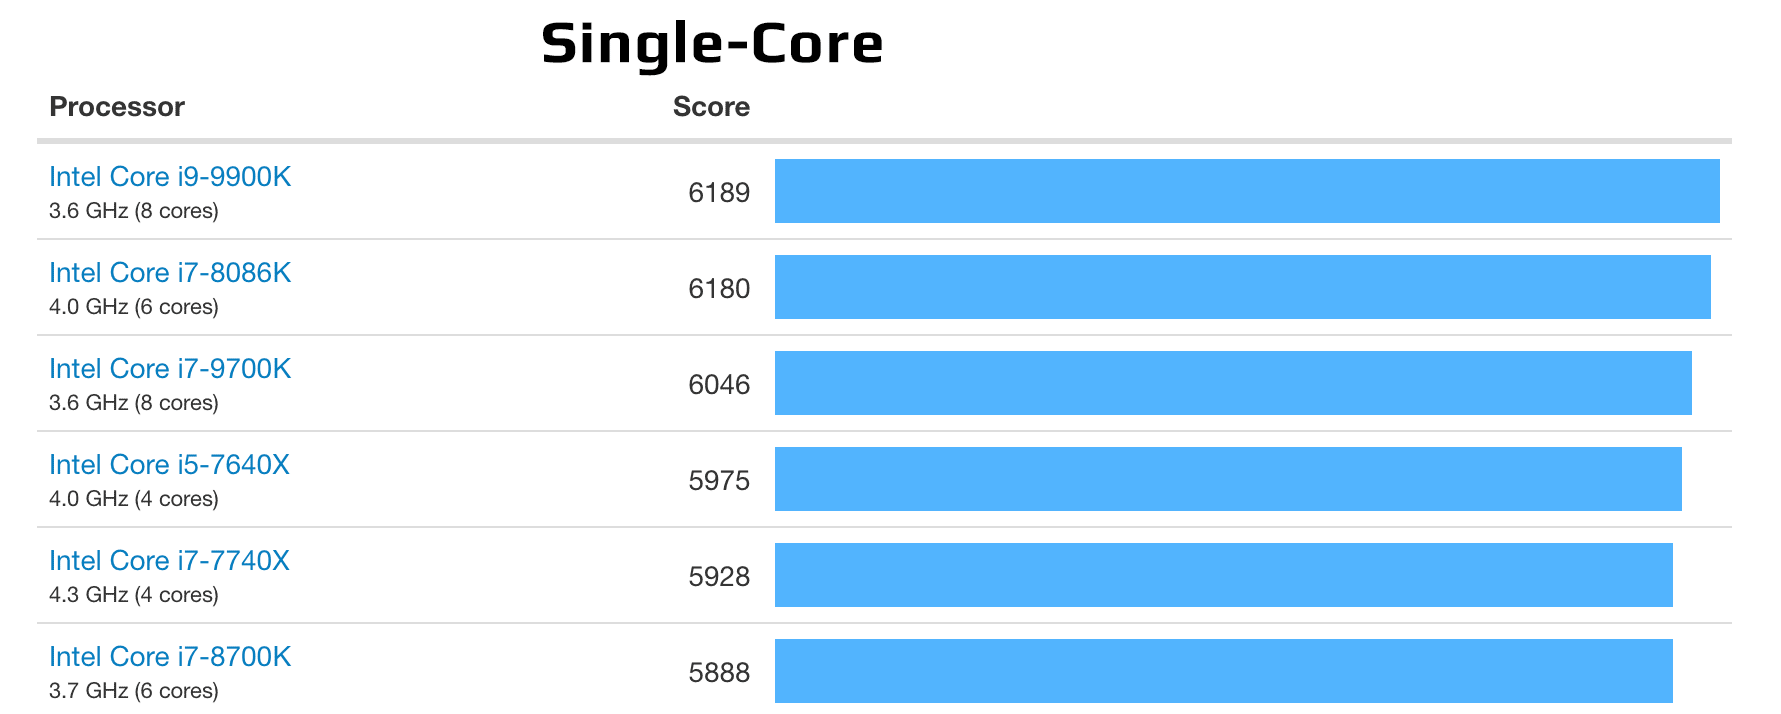 результаты тестирования процессоров в режиме single-core